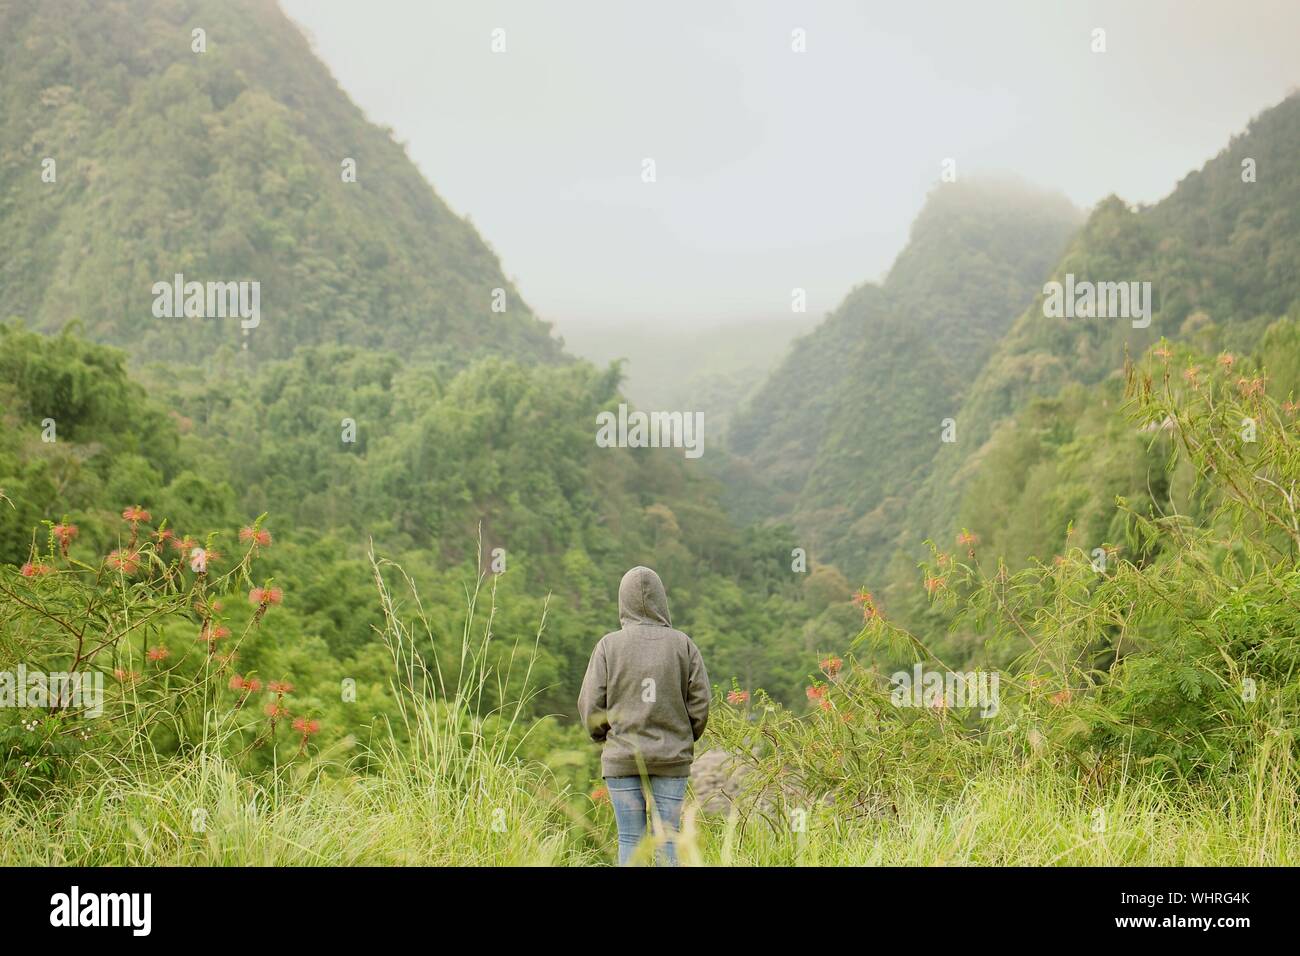 Persona solitaria contemplando las montañas Foto de stock